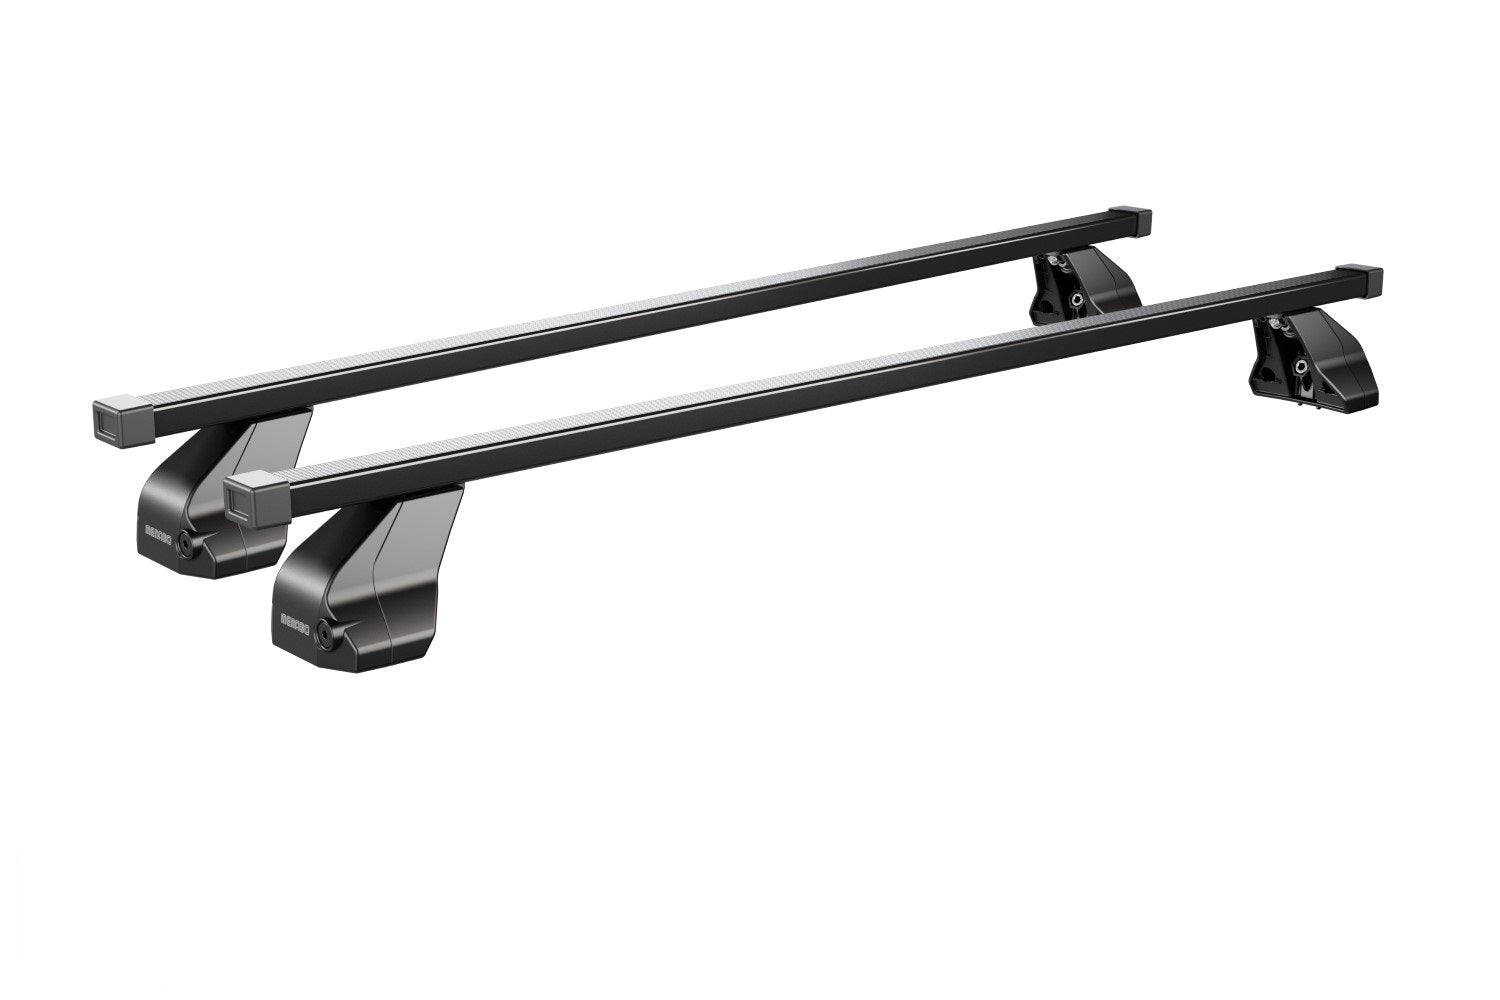 Barre portatutto Menabo Omega in acciaio zincato colore nero per FORD S-Max I (No tetto in vetro / No glass sunroof) 5 porte anno dal 2006 al 2015 con tetto liscio